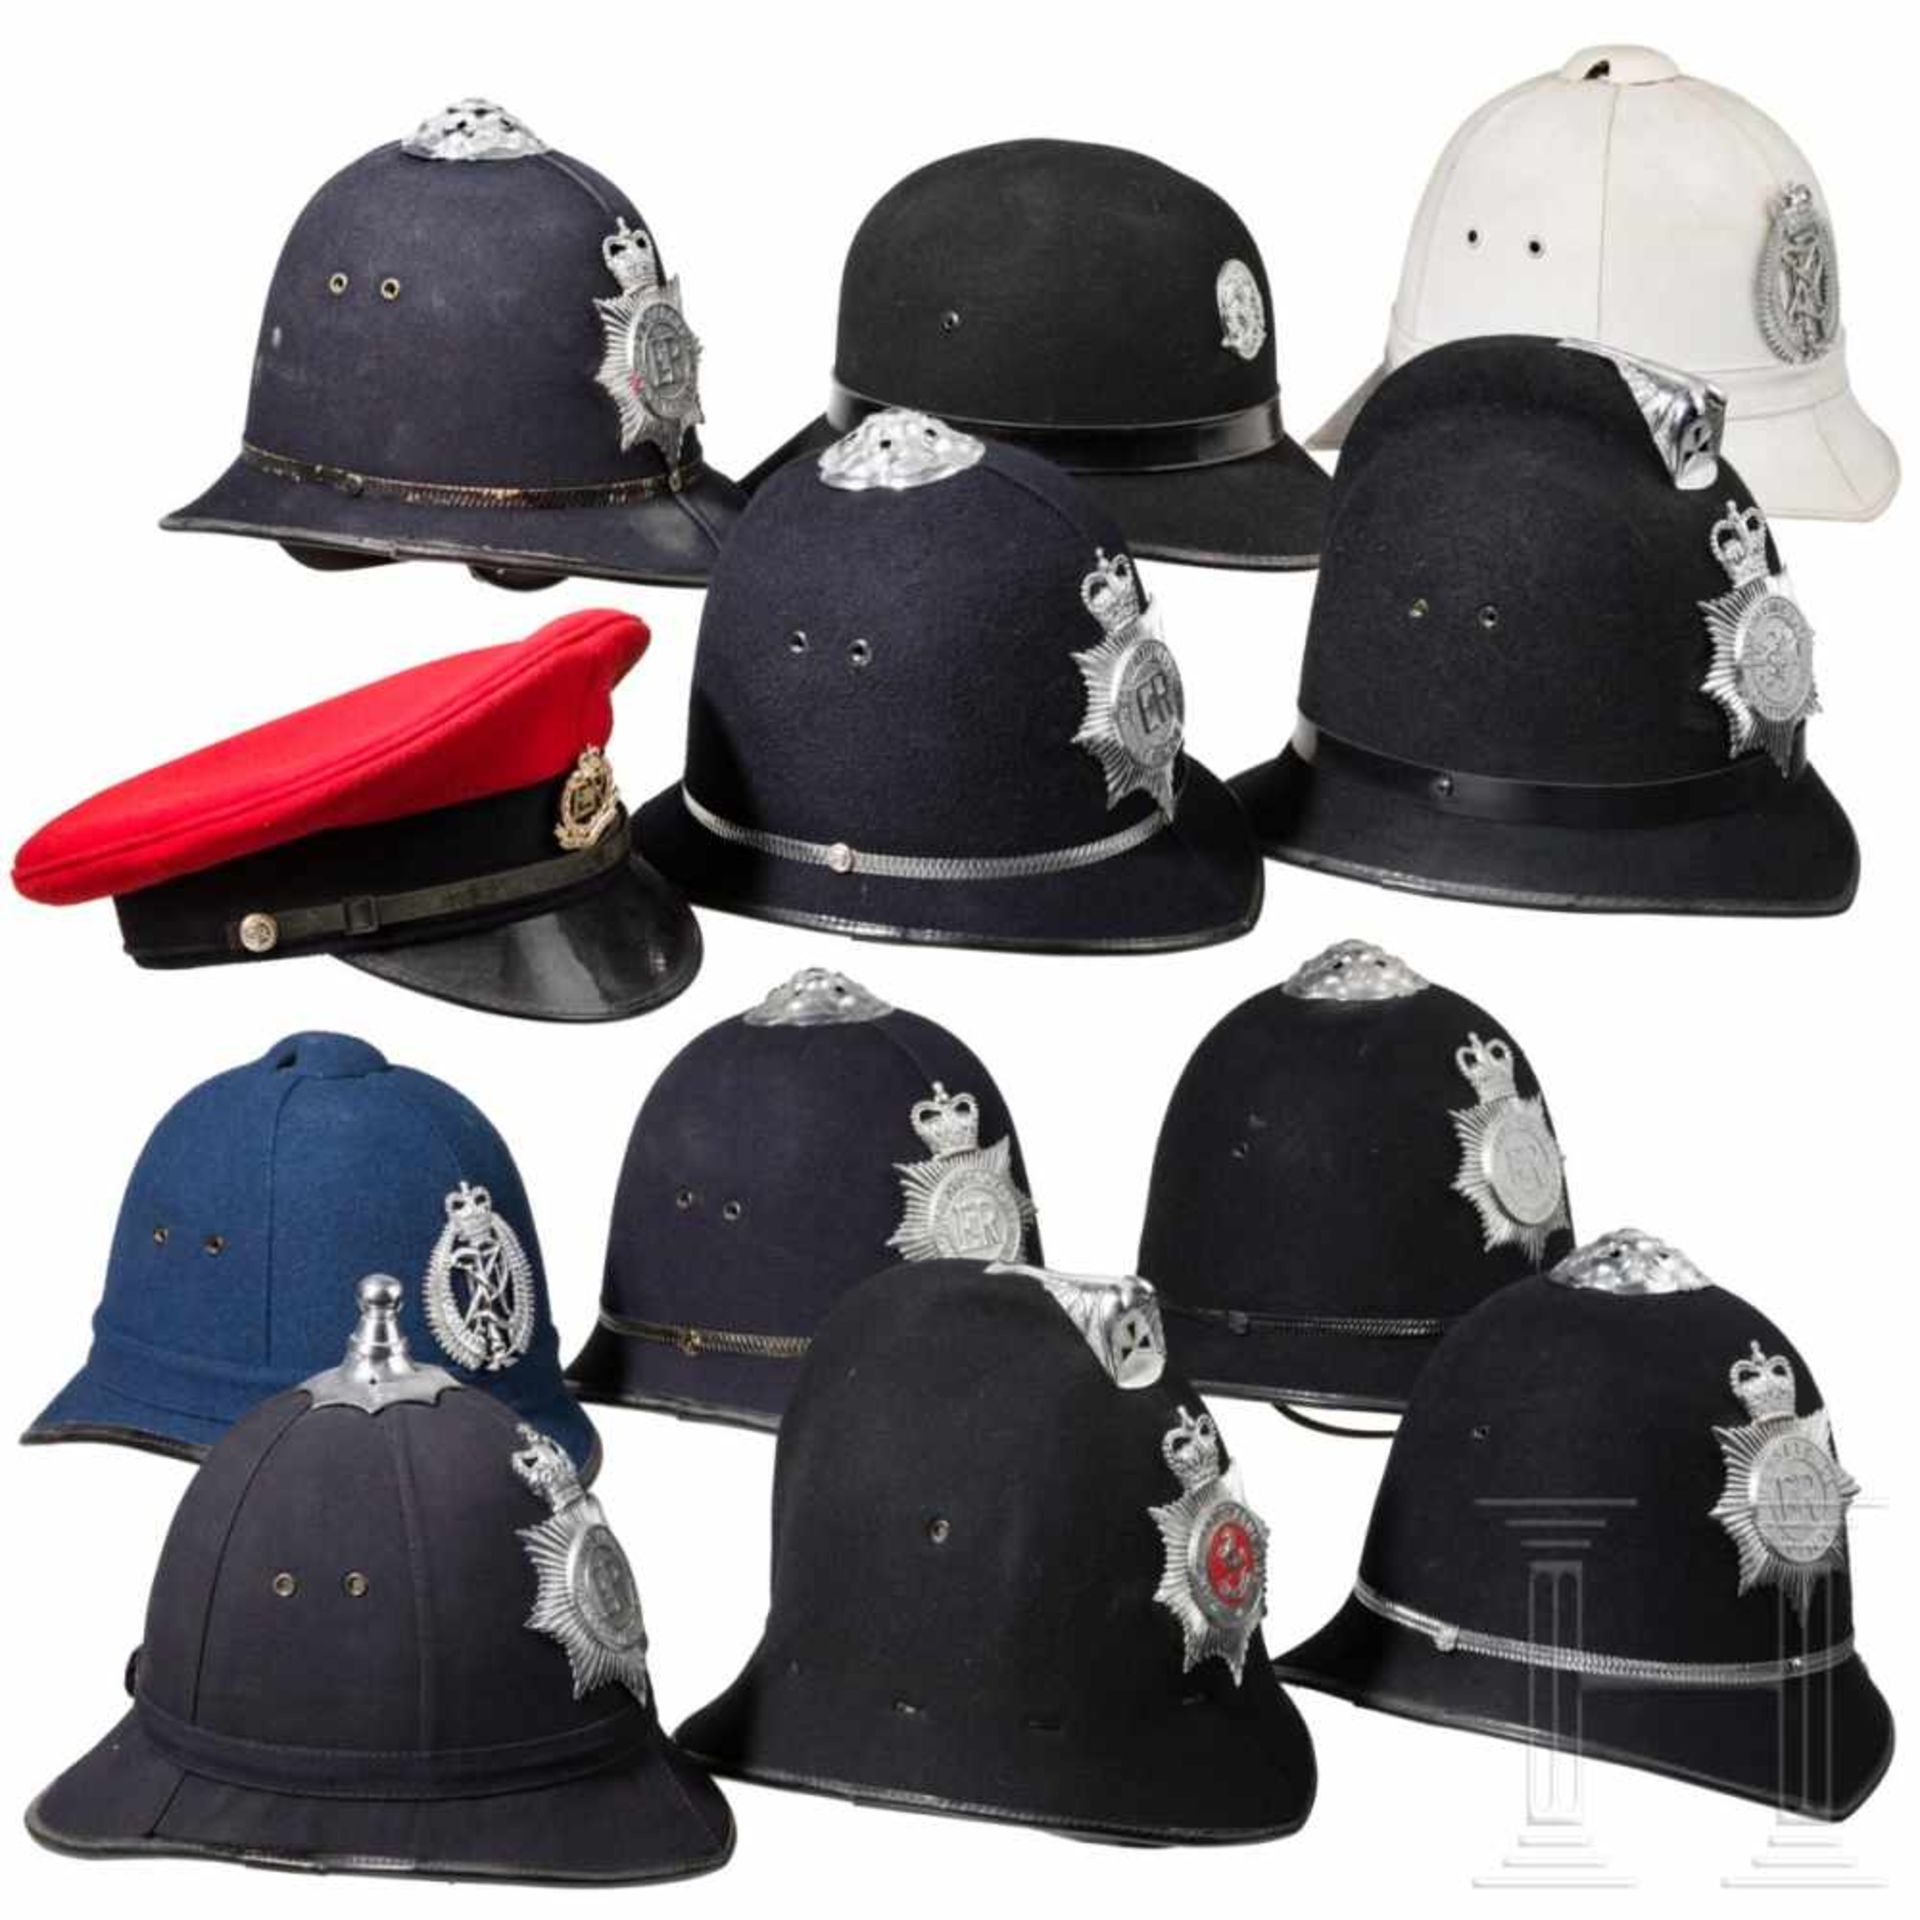 Zwölf Polizei-Kopfbedeckungen, Großbritannien/Neuseeland, 20. Jhdt. - Bild 2 aus 2